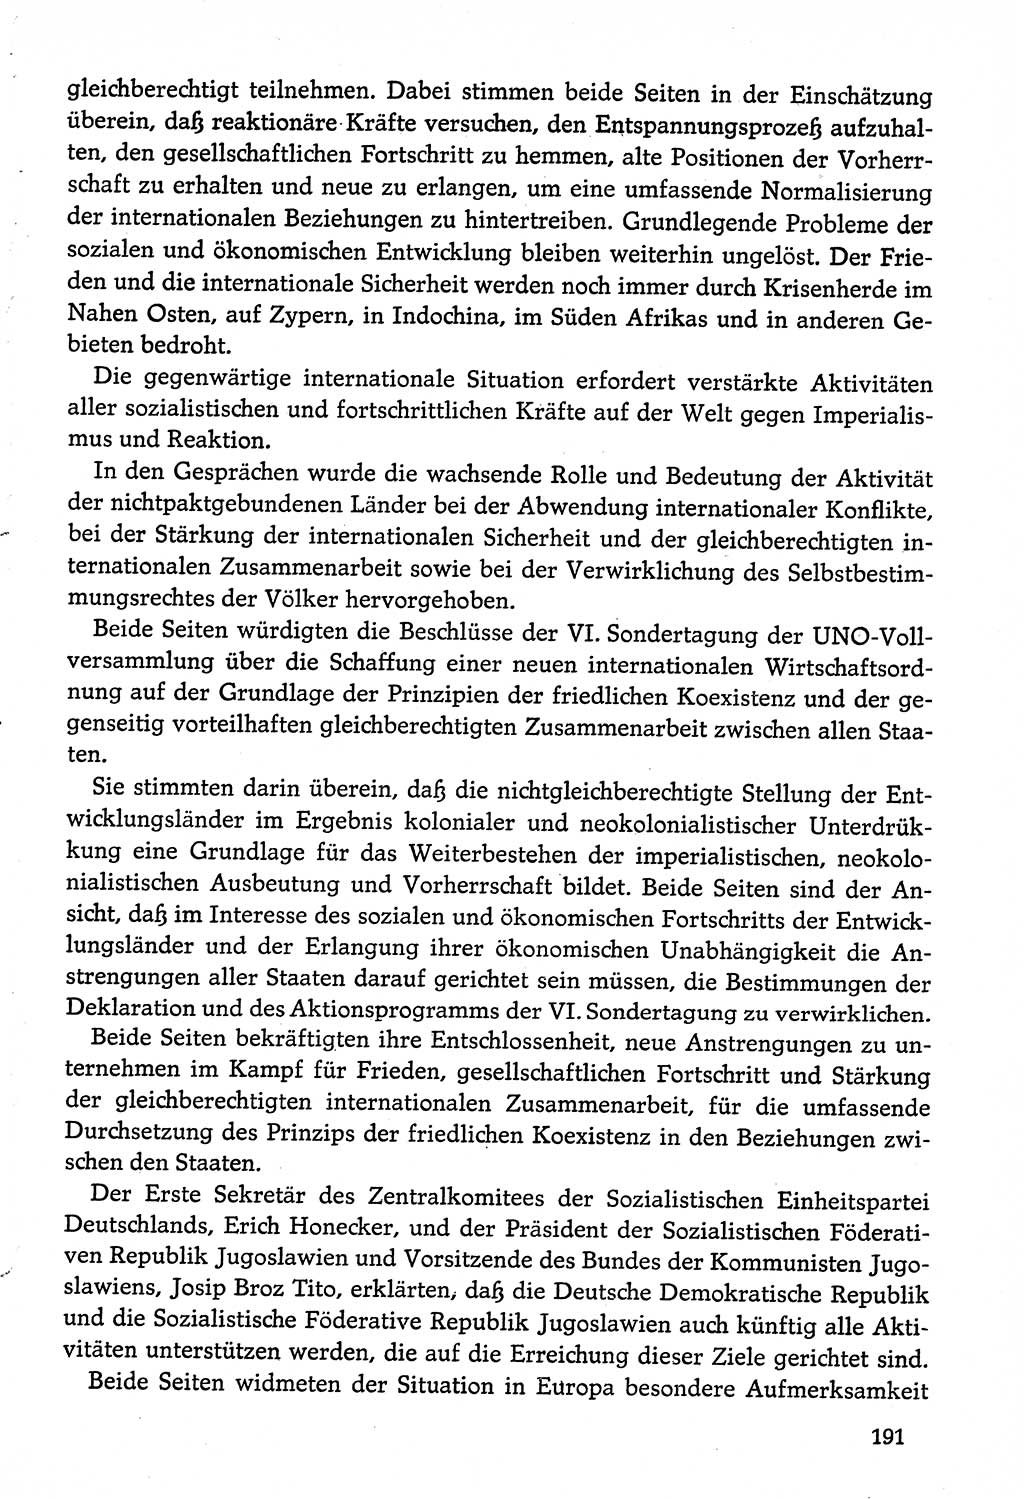 Dokumente der Sozialistischen Einheitspartei Deutschlands (SED) [Deutsche Demokratische Republik (DDR)] 1974-1975, Seite 191 (Dok. SED DDR 1978, Bd. ⅩⅤ, S. 191)